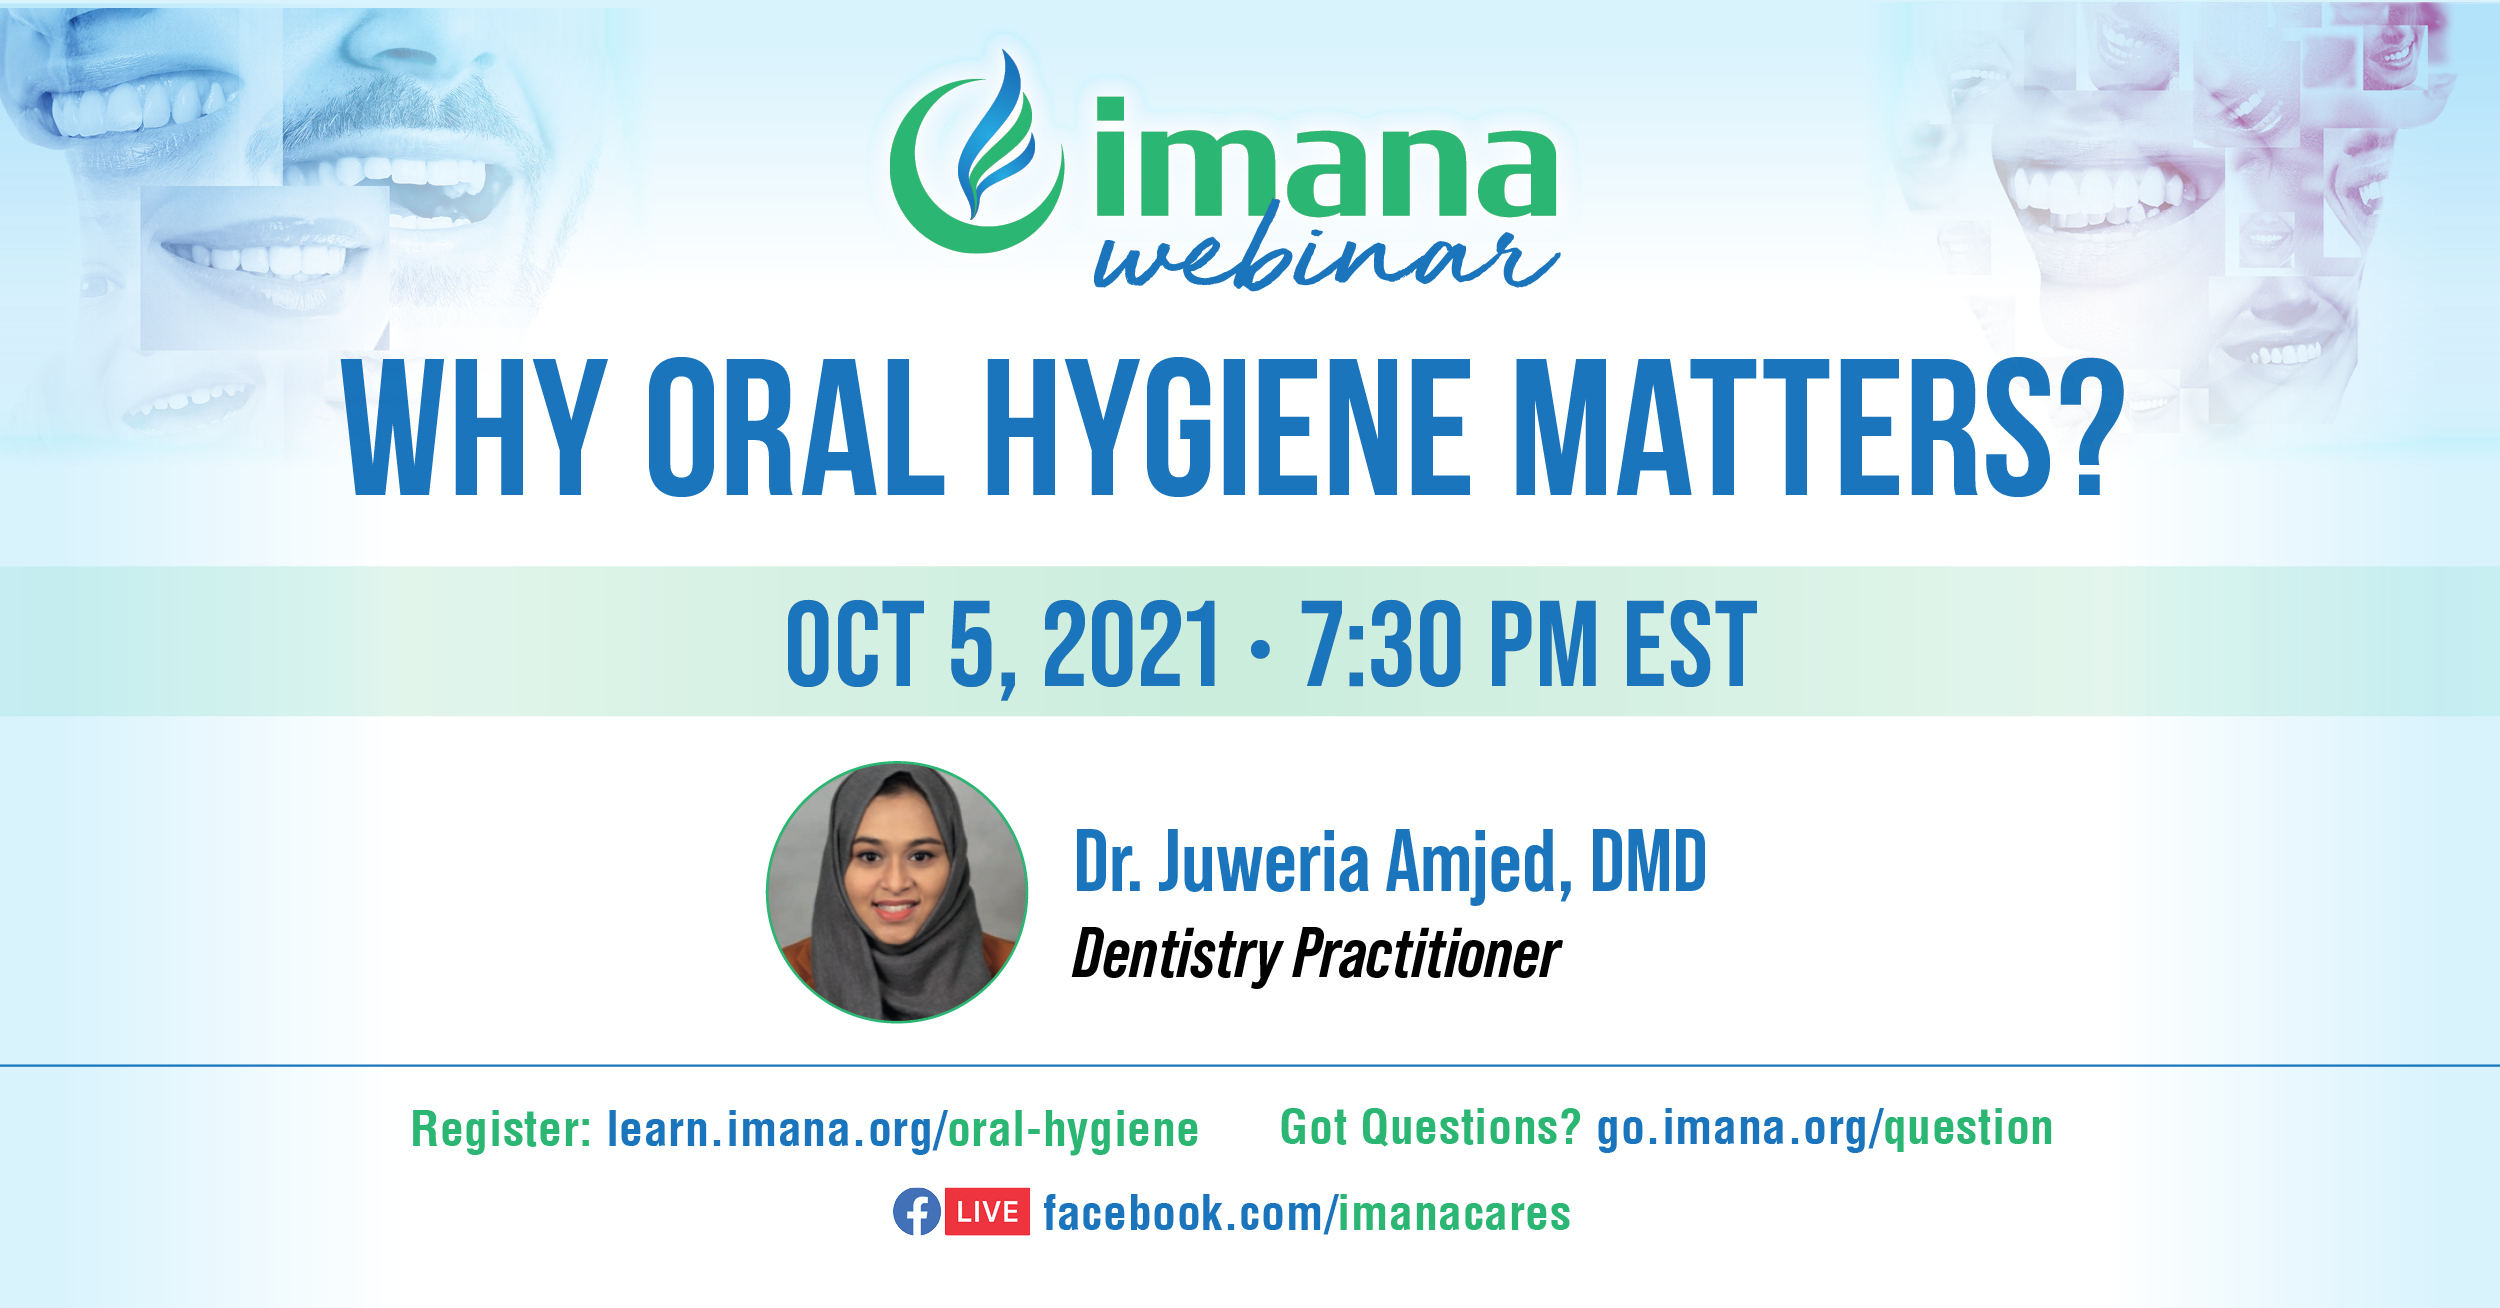 Why oral hygiene matters? Imana webinar